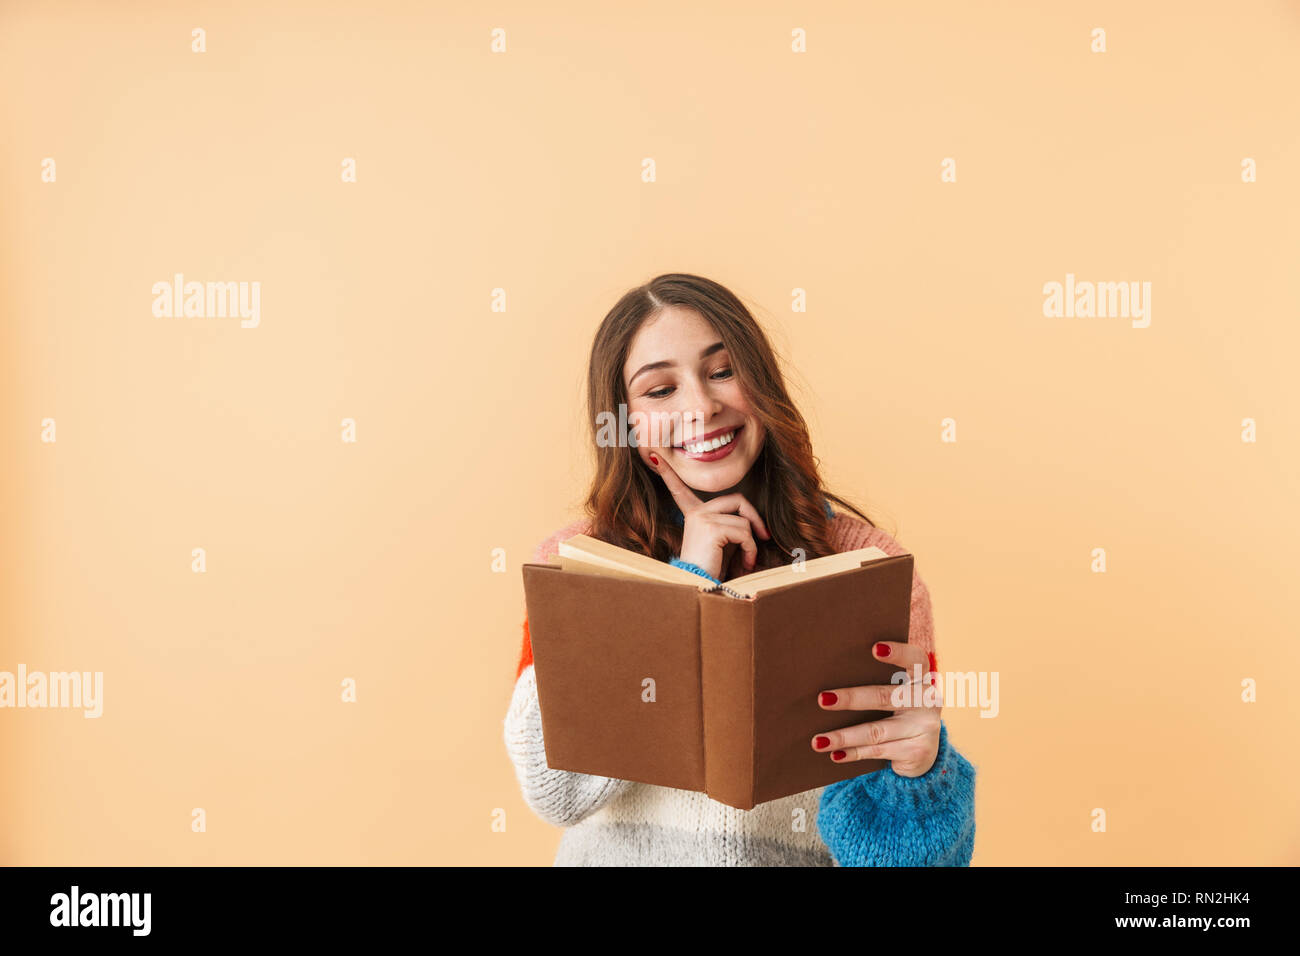 Image de femme brune 20s avec de longs cheveux smiling and reading book isolés sur fond beige Banque D'Images